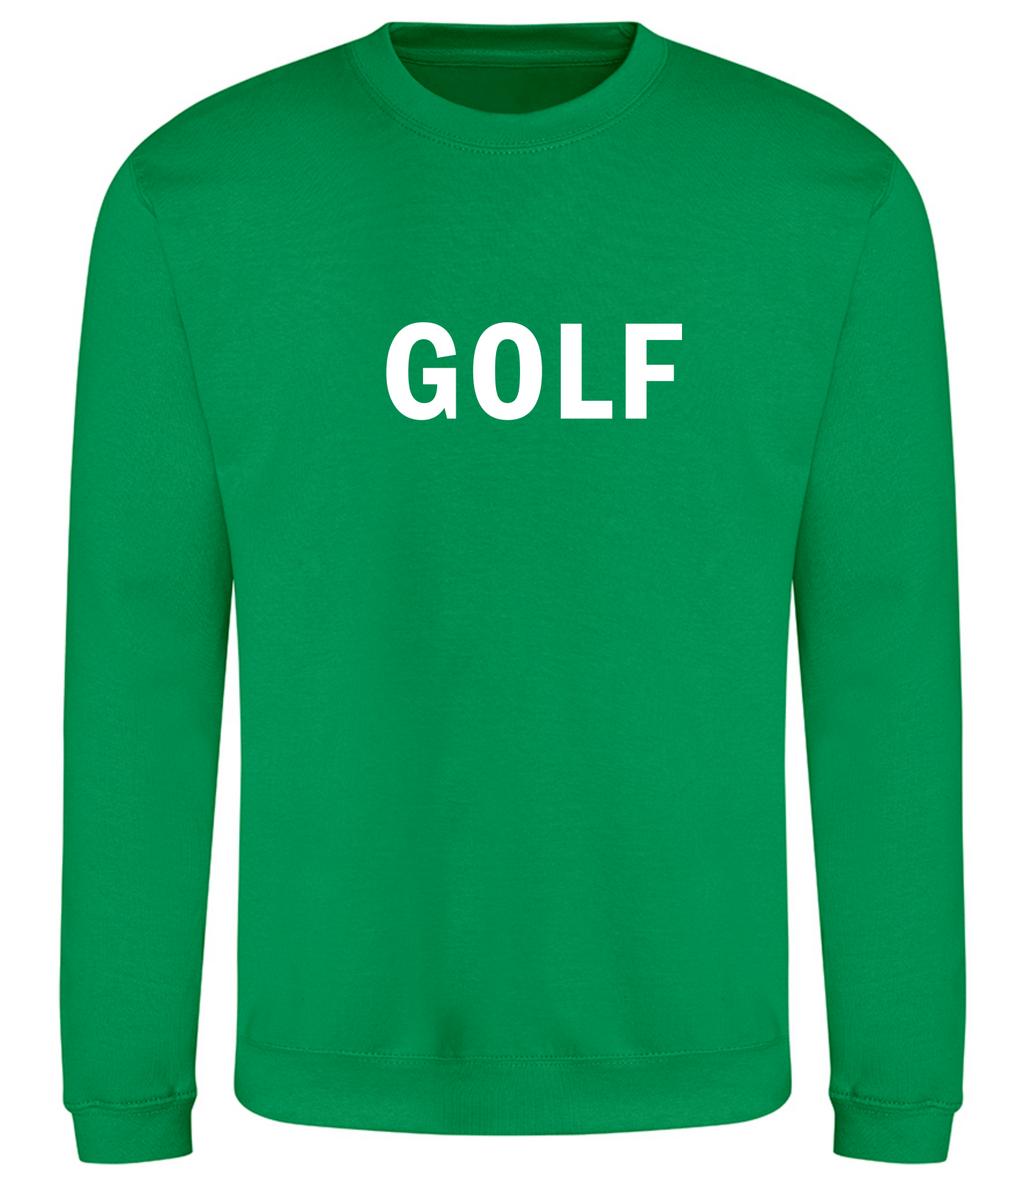 Golf God Clothing "GOLF" sweatshirt - Kelly Green